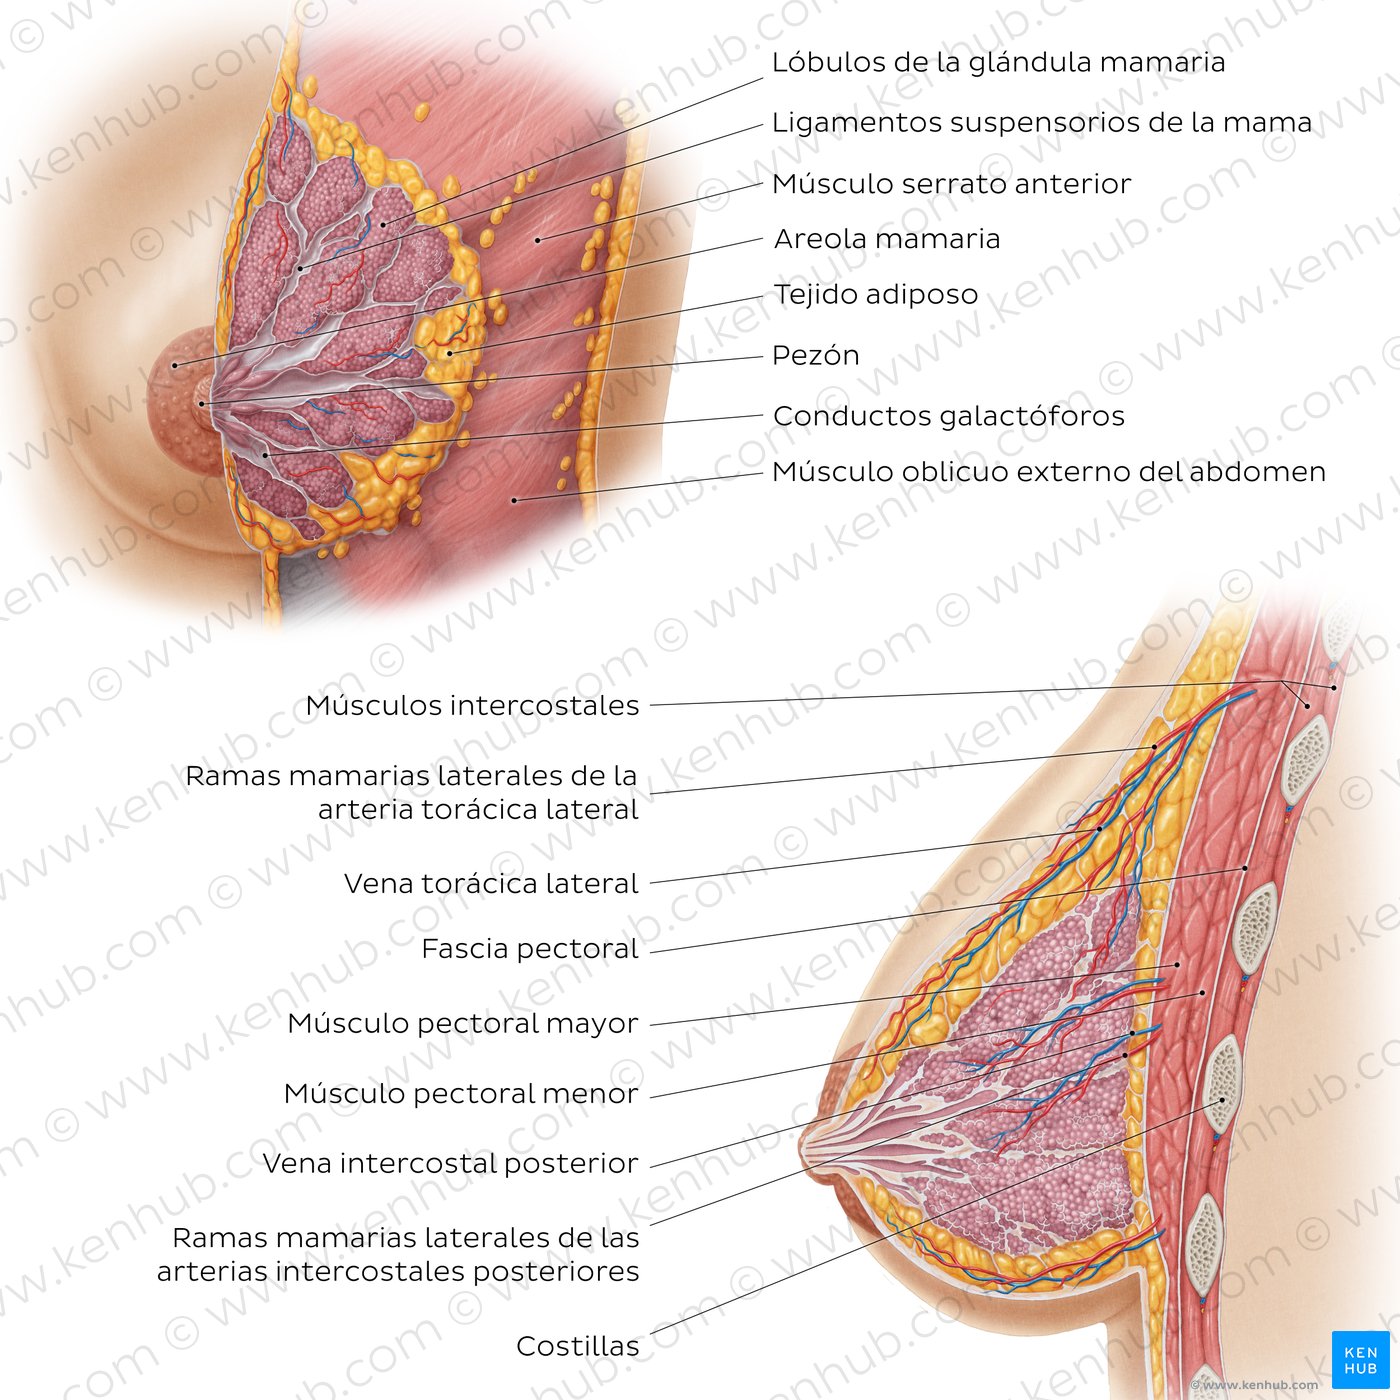 Anatomía de la mama femenina